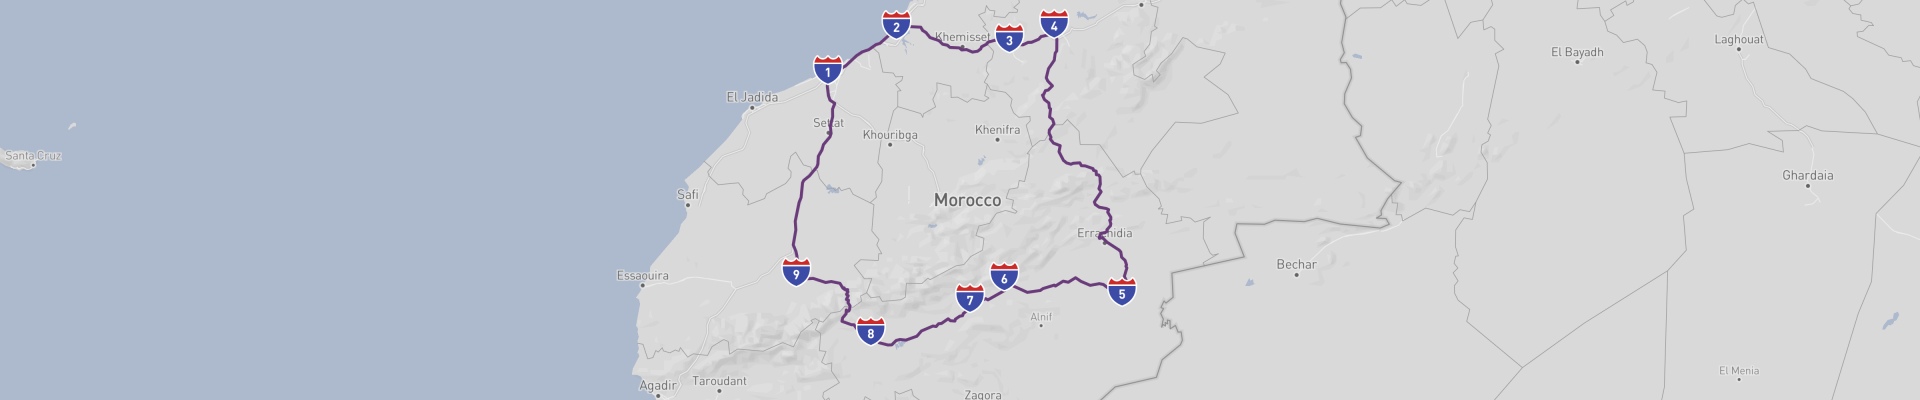 モロッコ・ハイライト・ロードの旅